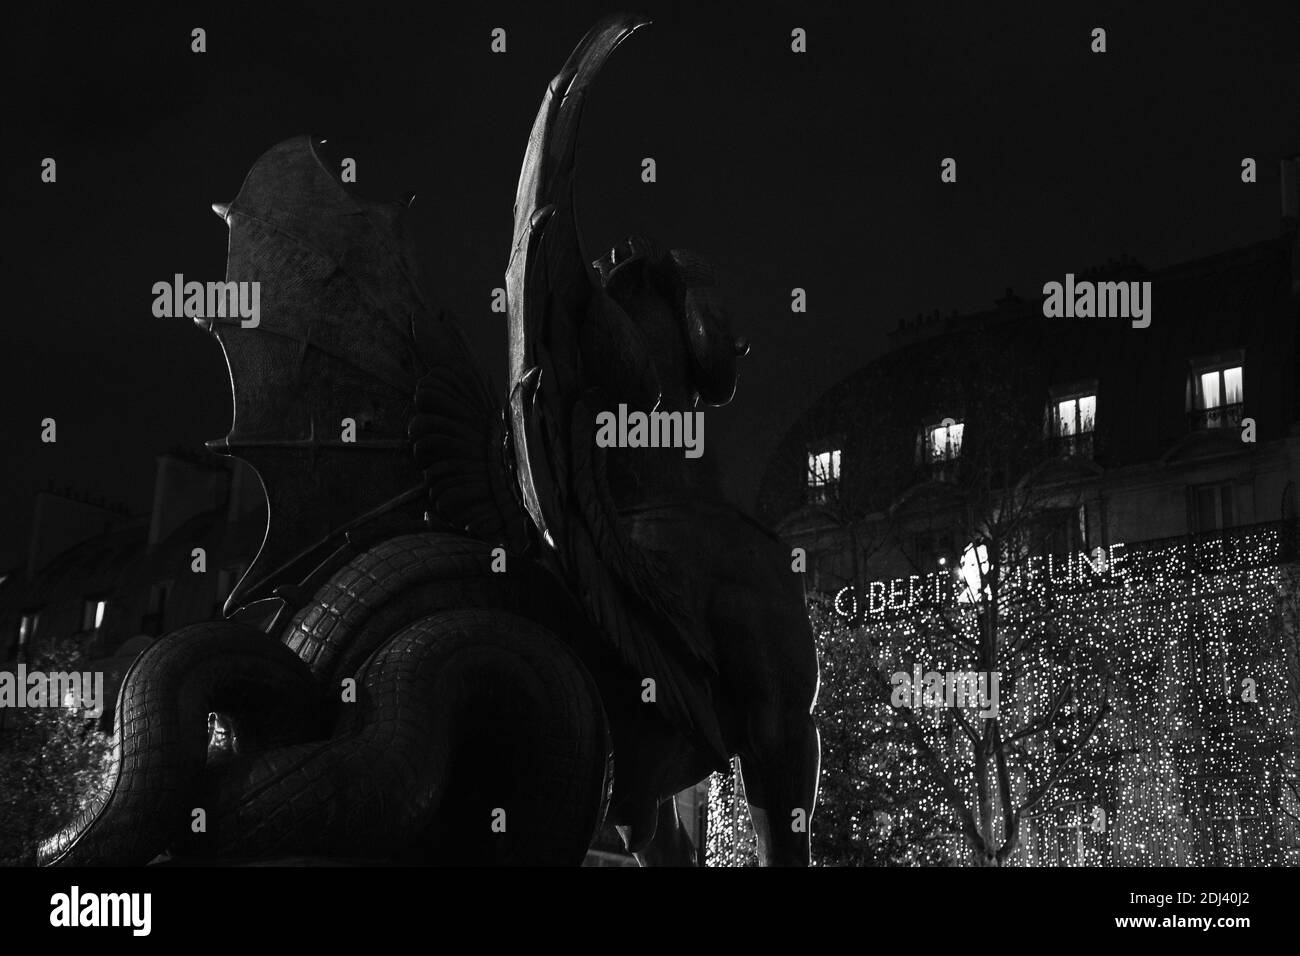 PARIS, FRANCE - 2 DÉCEMBRE 2018 : vue nocturne de la place Saint Michel avec dragon (détail de la fontaine Saint Michel) et une des librairies Gibert Jeune Banque D'Images